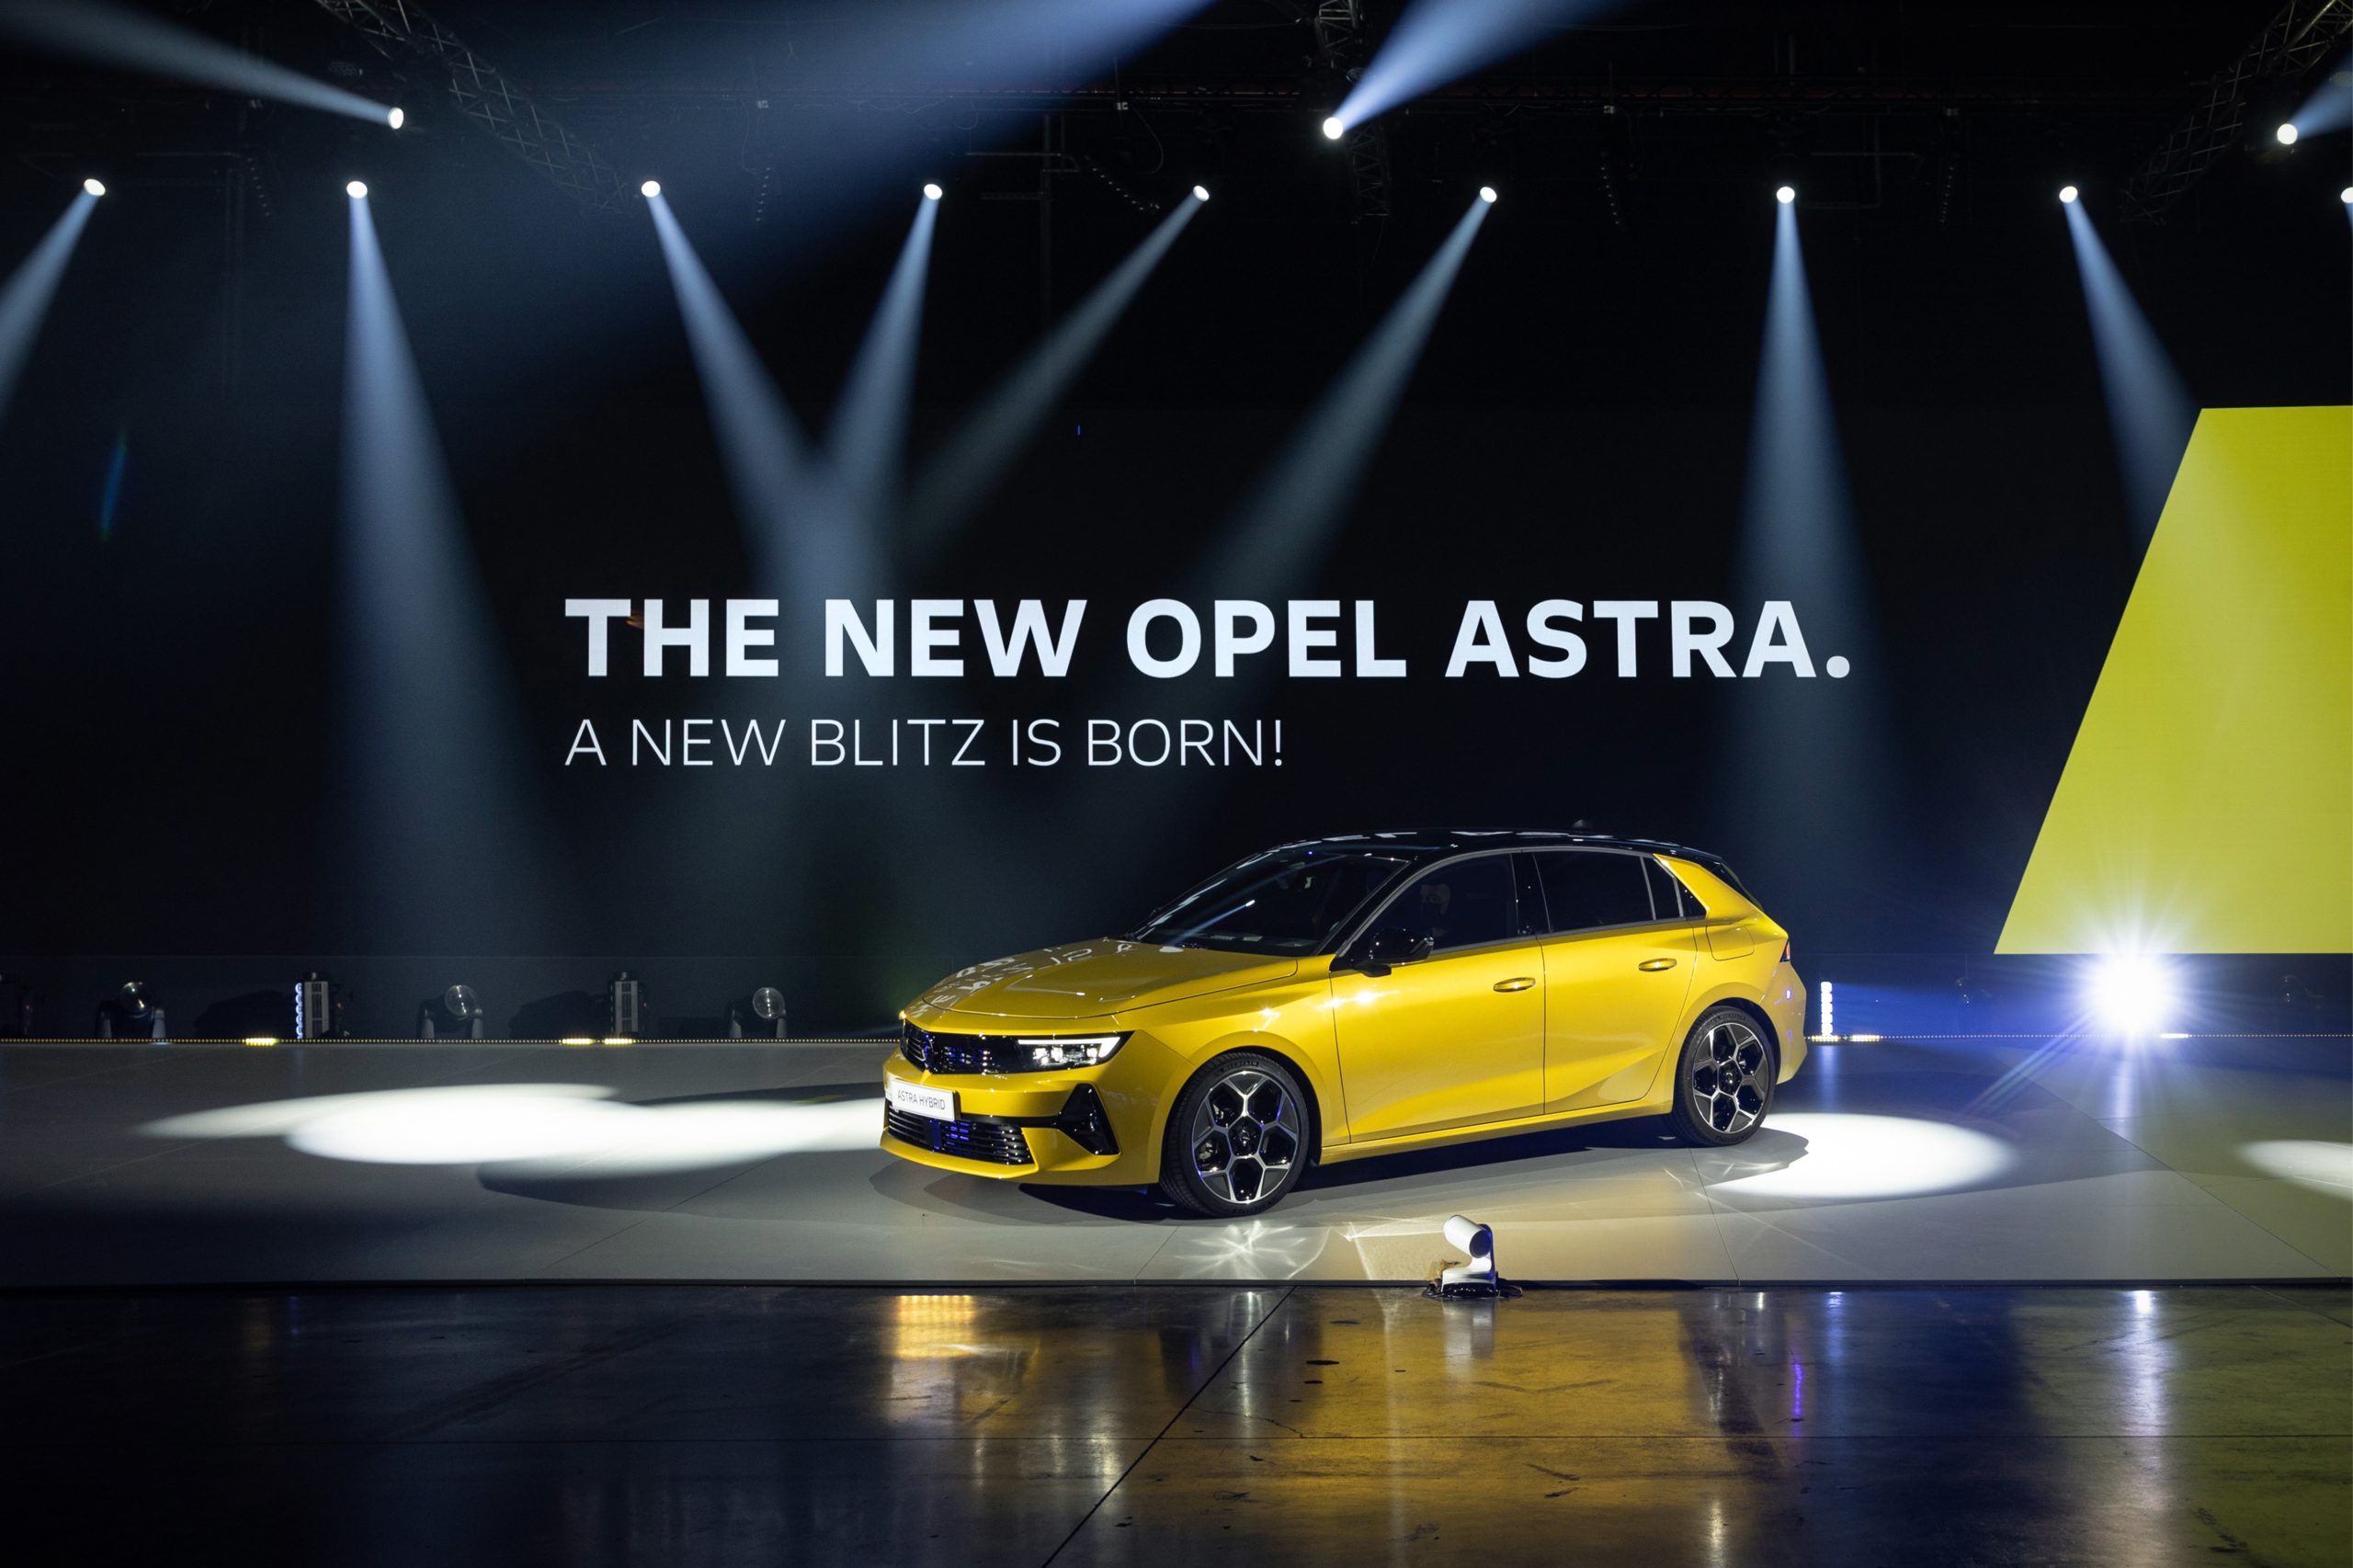 Video: Stafim präsentiert den neuen Opel Astra – eine Revolution im tunesischen Automobildesign und -technologie